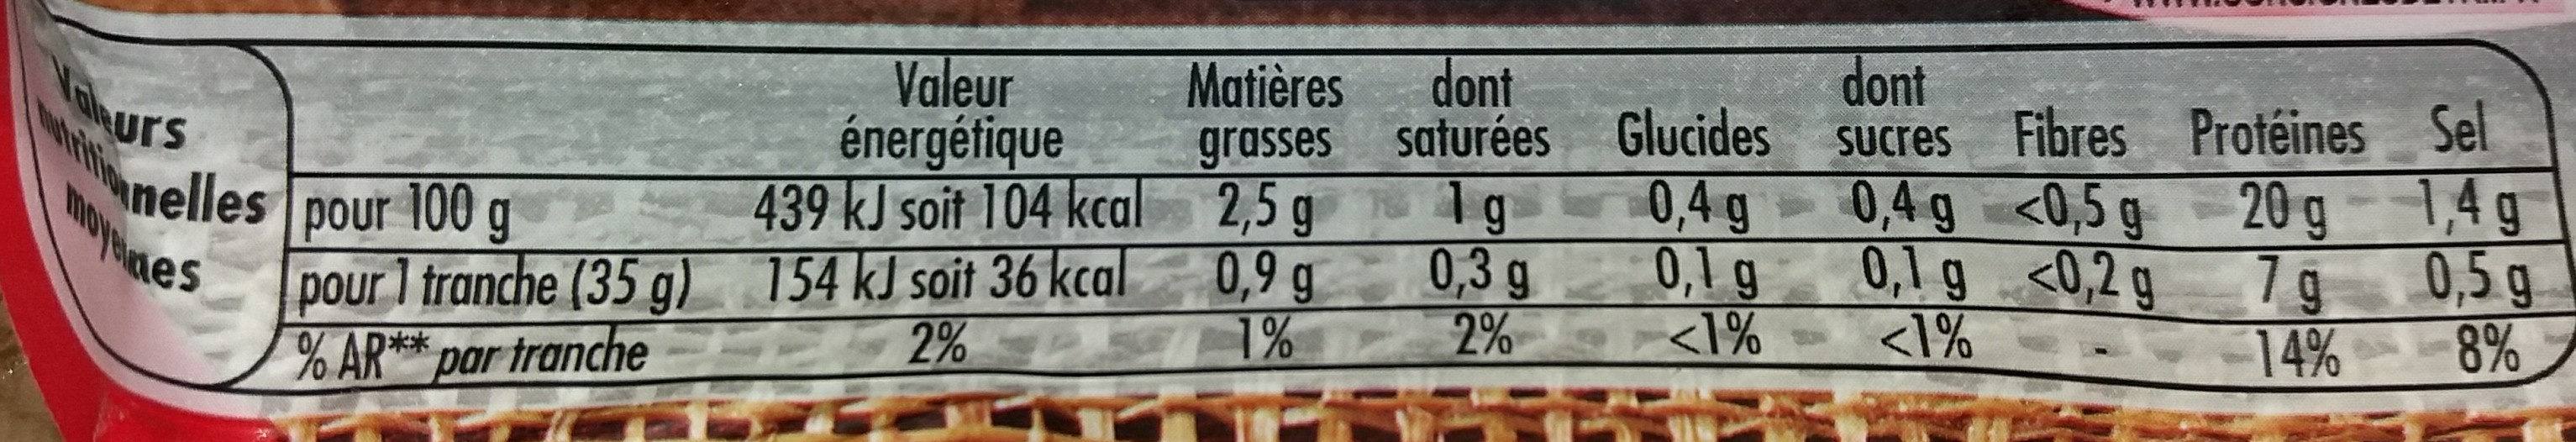 Le Bon Paris -25% de Sel - Tableau nutritionnel